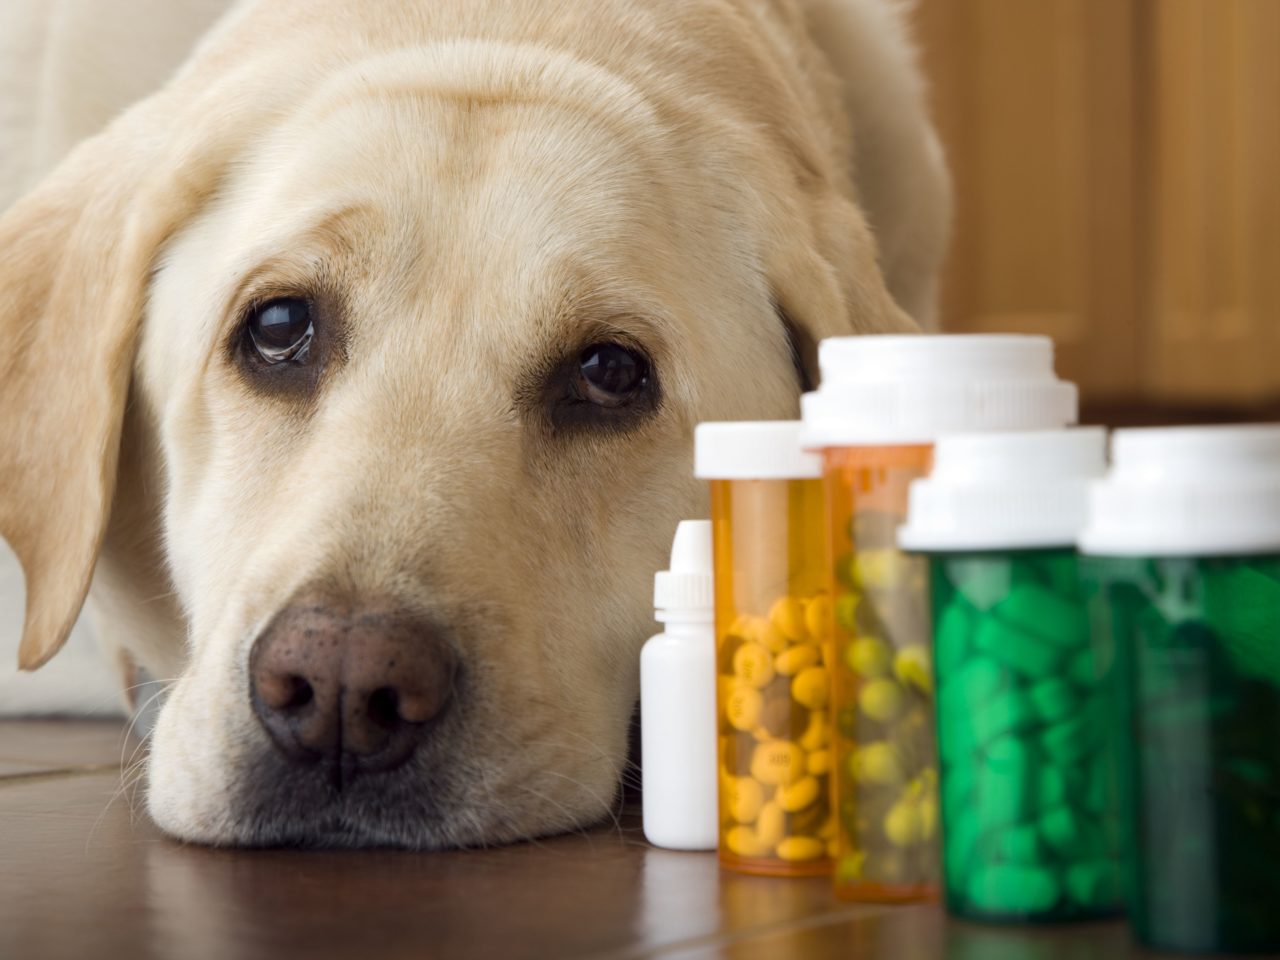 Farmaci per cani e costi esorbitanti, un labrador dallo sguardo sconsolato accanto a boccette di pillole colorate